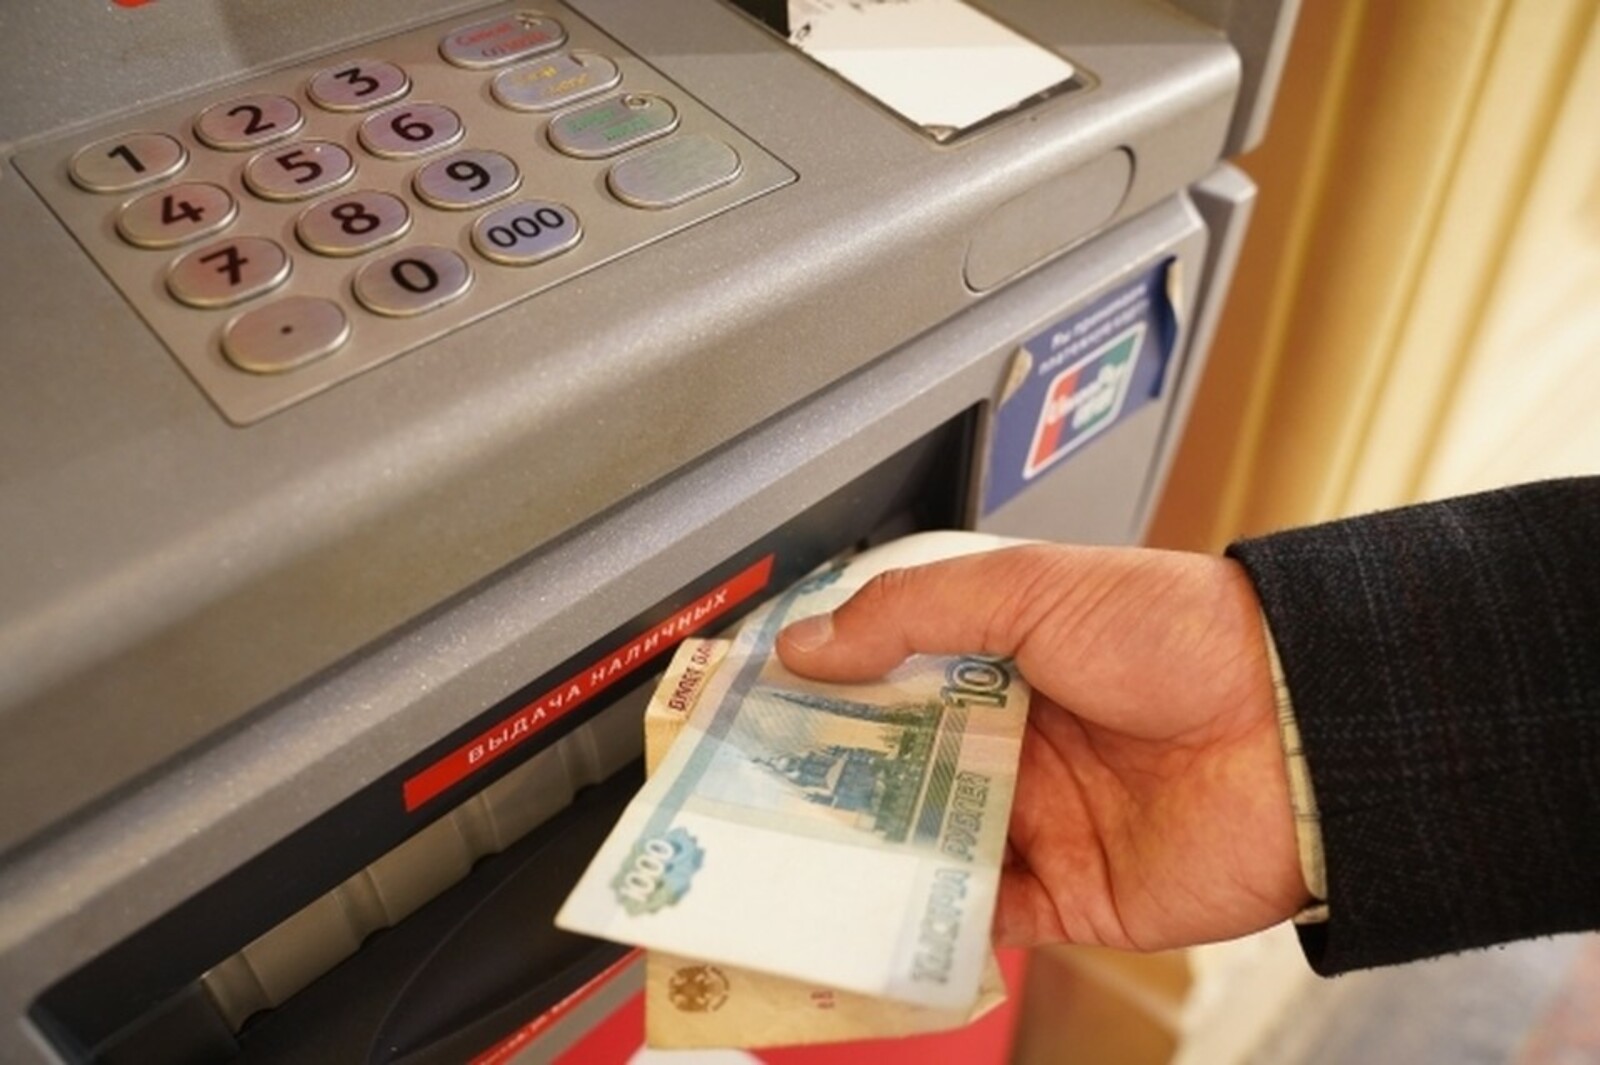 "Был в розыске полгода": в Башкирии будут судить инкассатора, похитившего из банкомата более 12 млн рублей